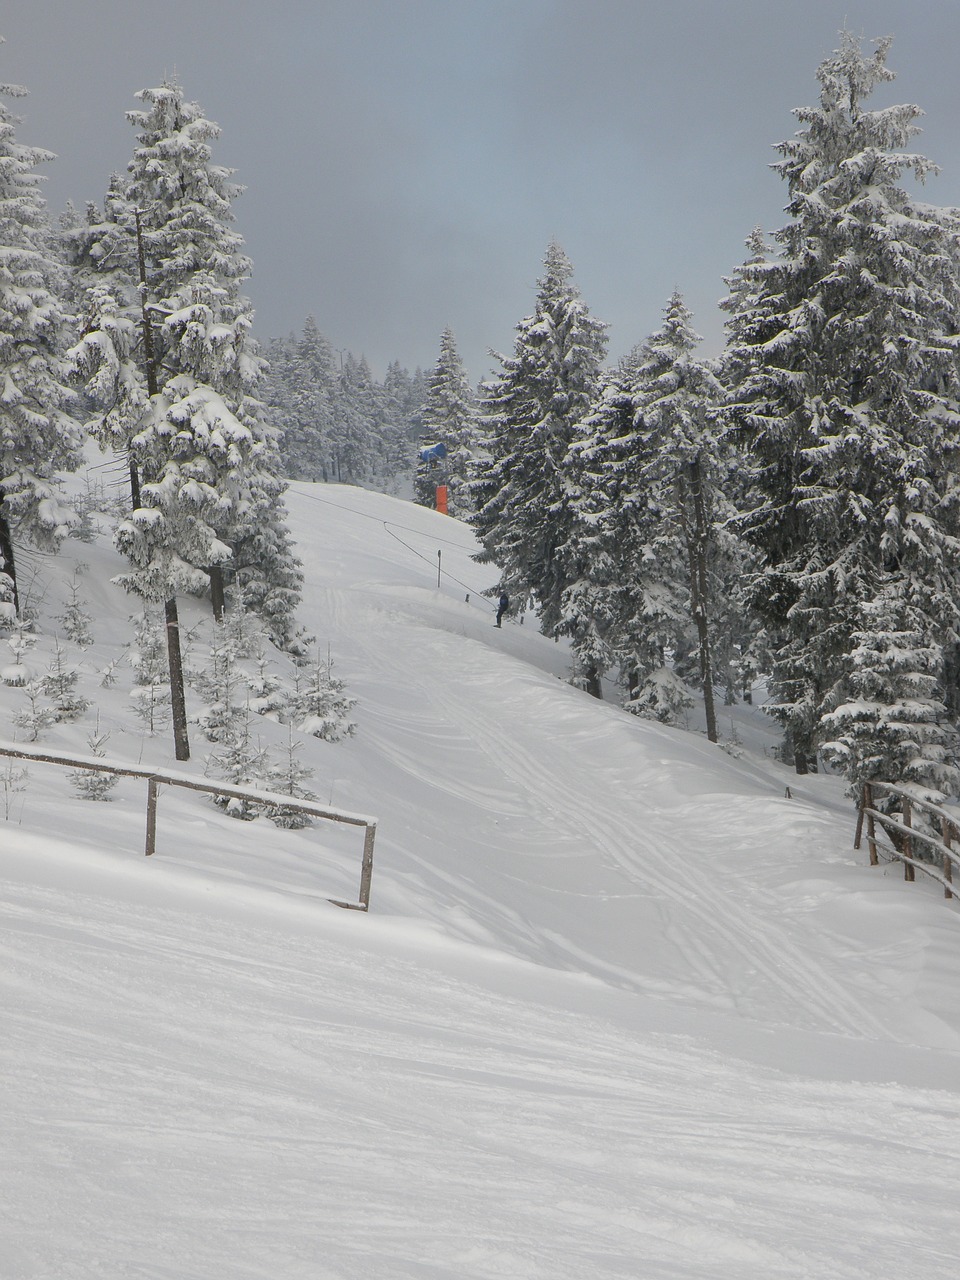 the ski slope  winter  mountains free photo